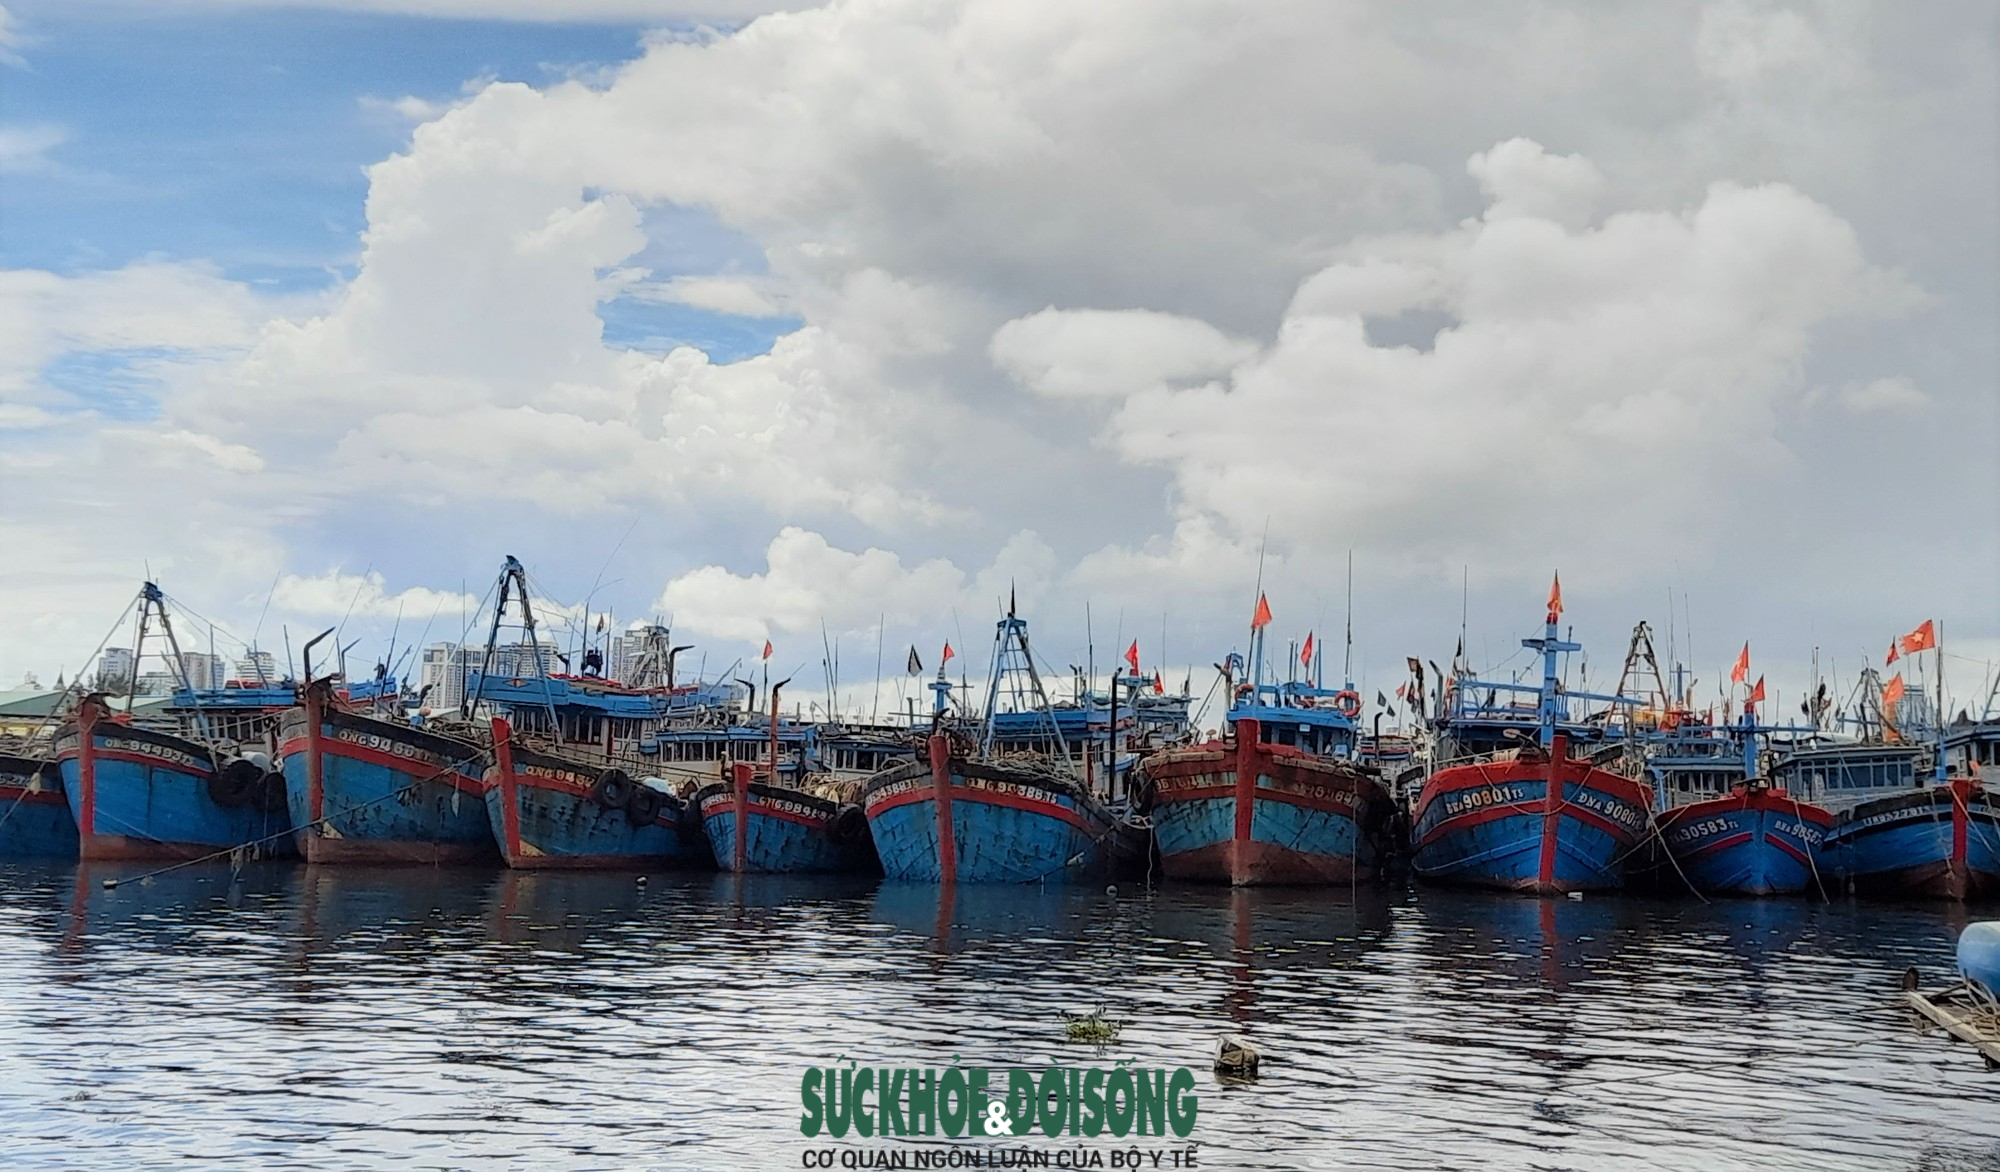  Âu thuyền Thọ Quang là nơi neo đậu tránh bão Noru của tàu thuyền ở nhiều địa phương khu vực miền Trung như: Quảng Nam, Quảng Ngãi, Thừa Thiên Huế...